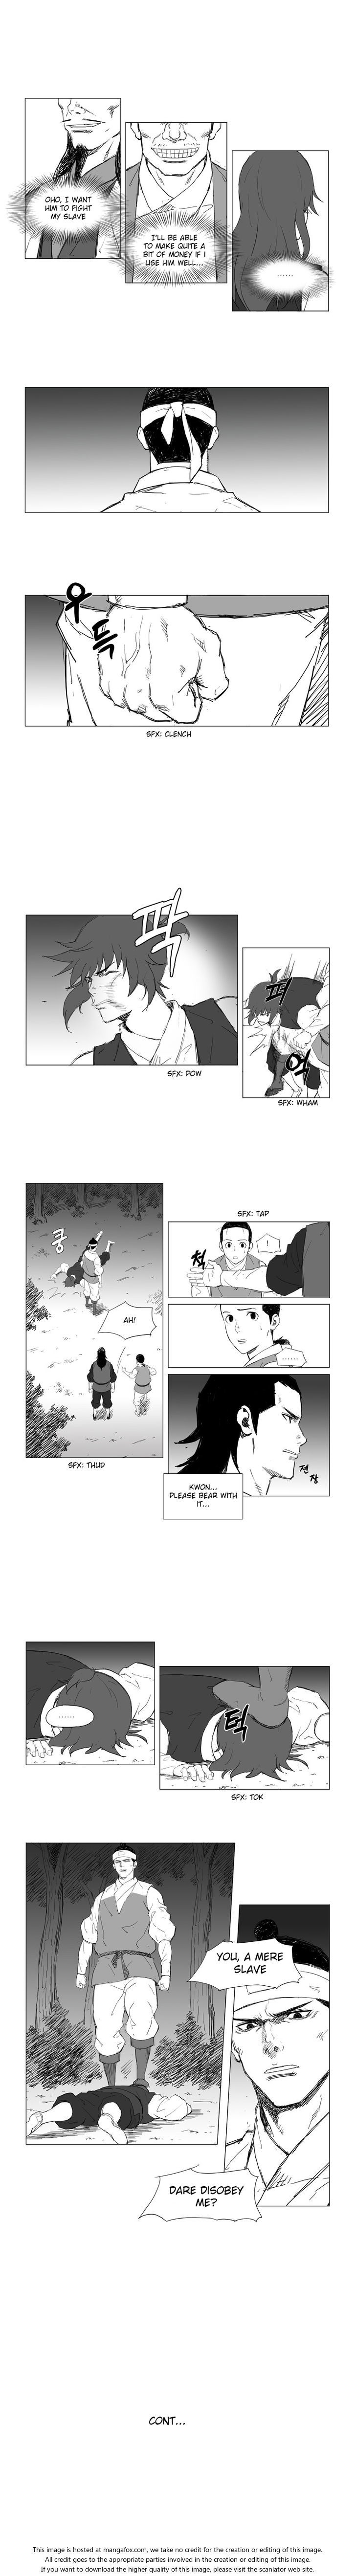 Mujang Chapter 006 page 4